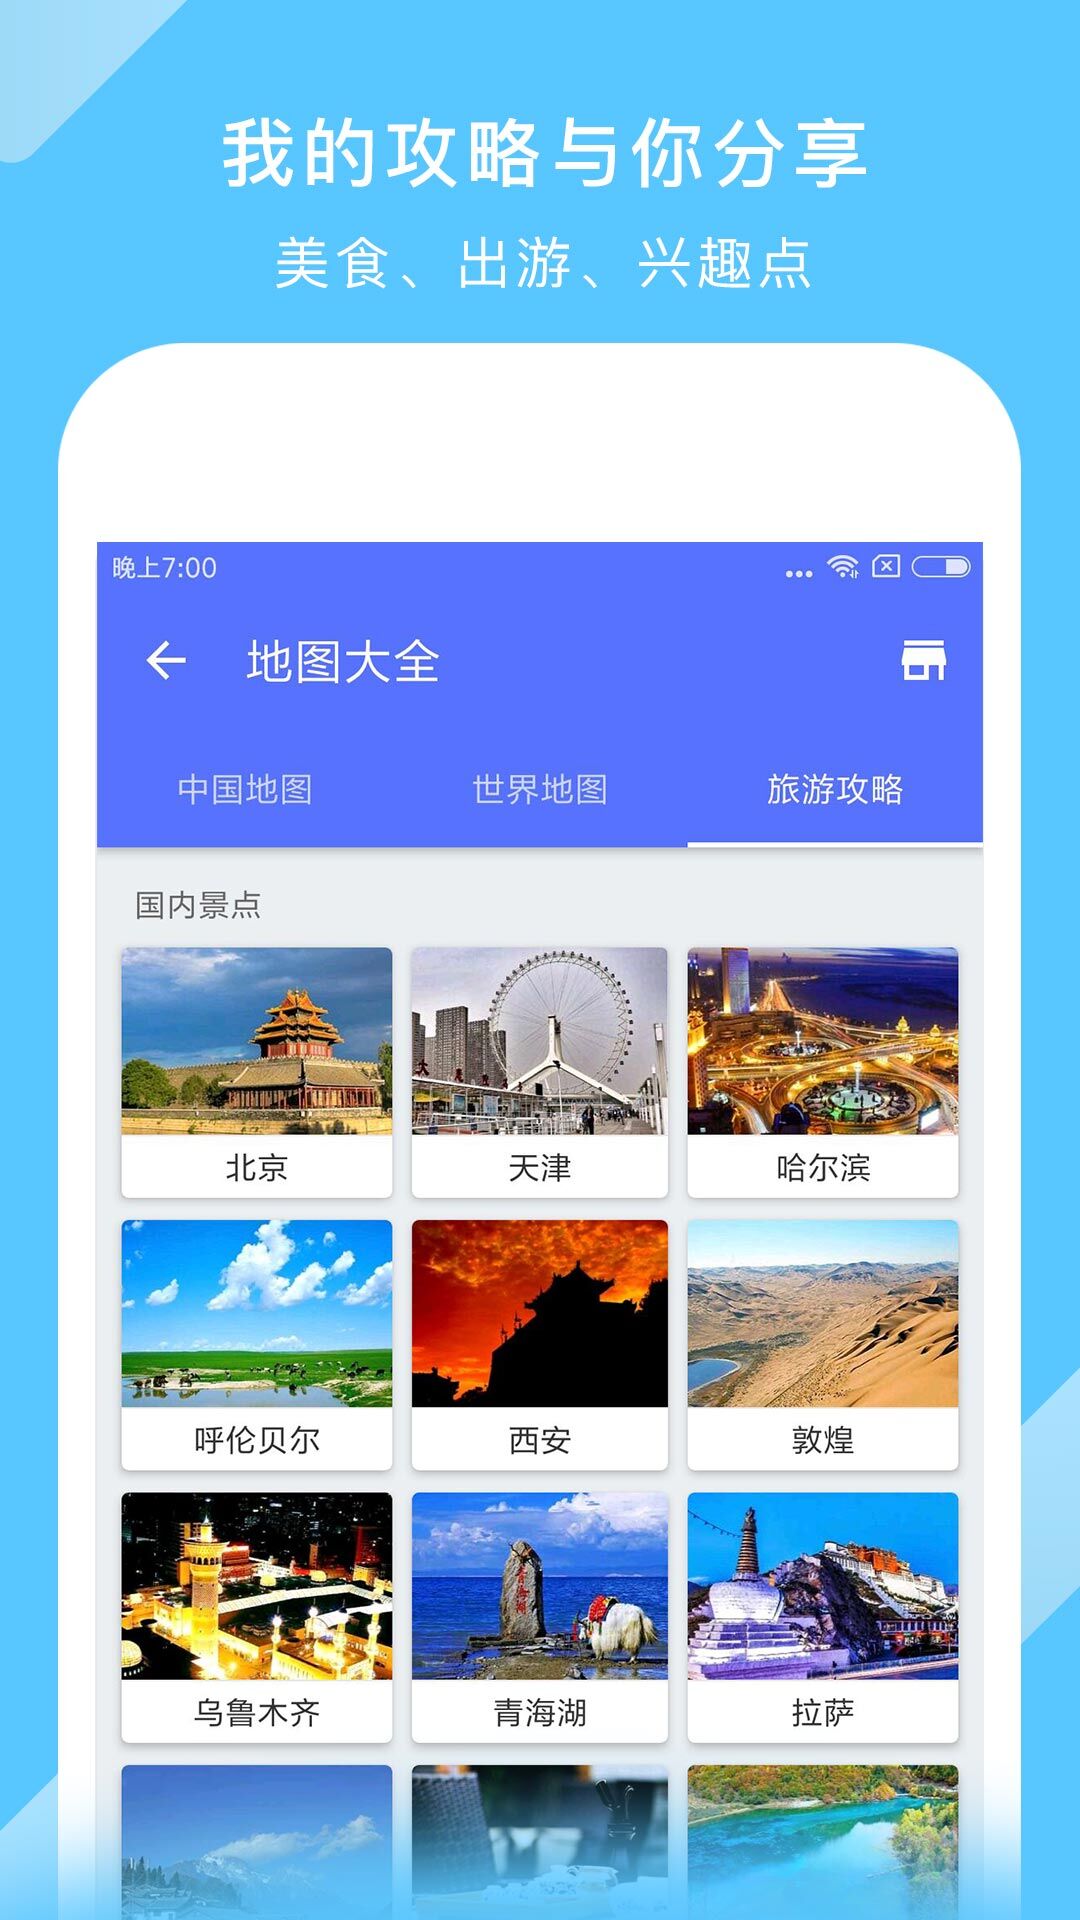 中国地图安卓版